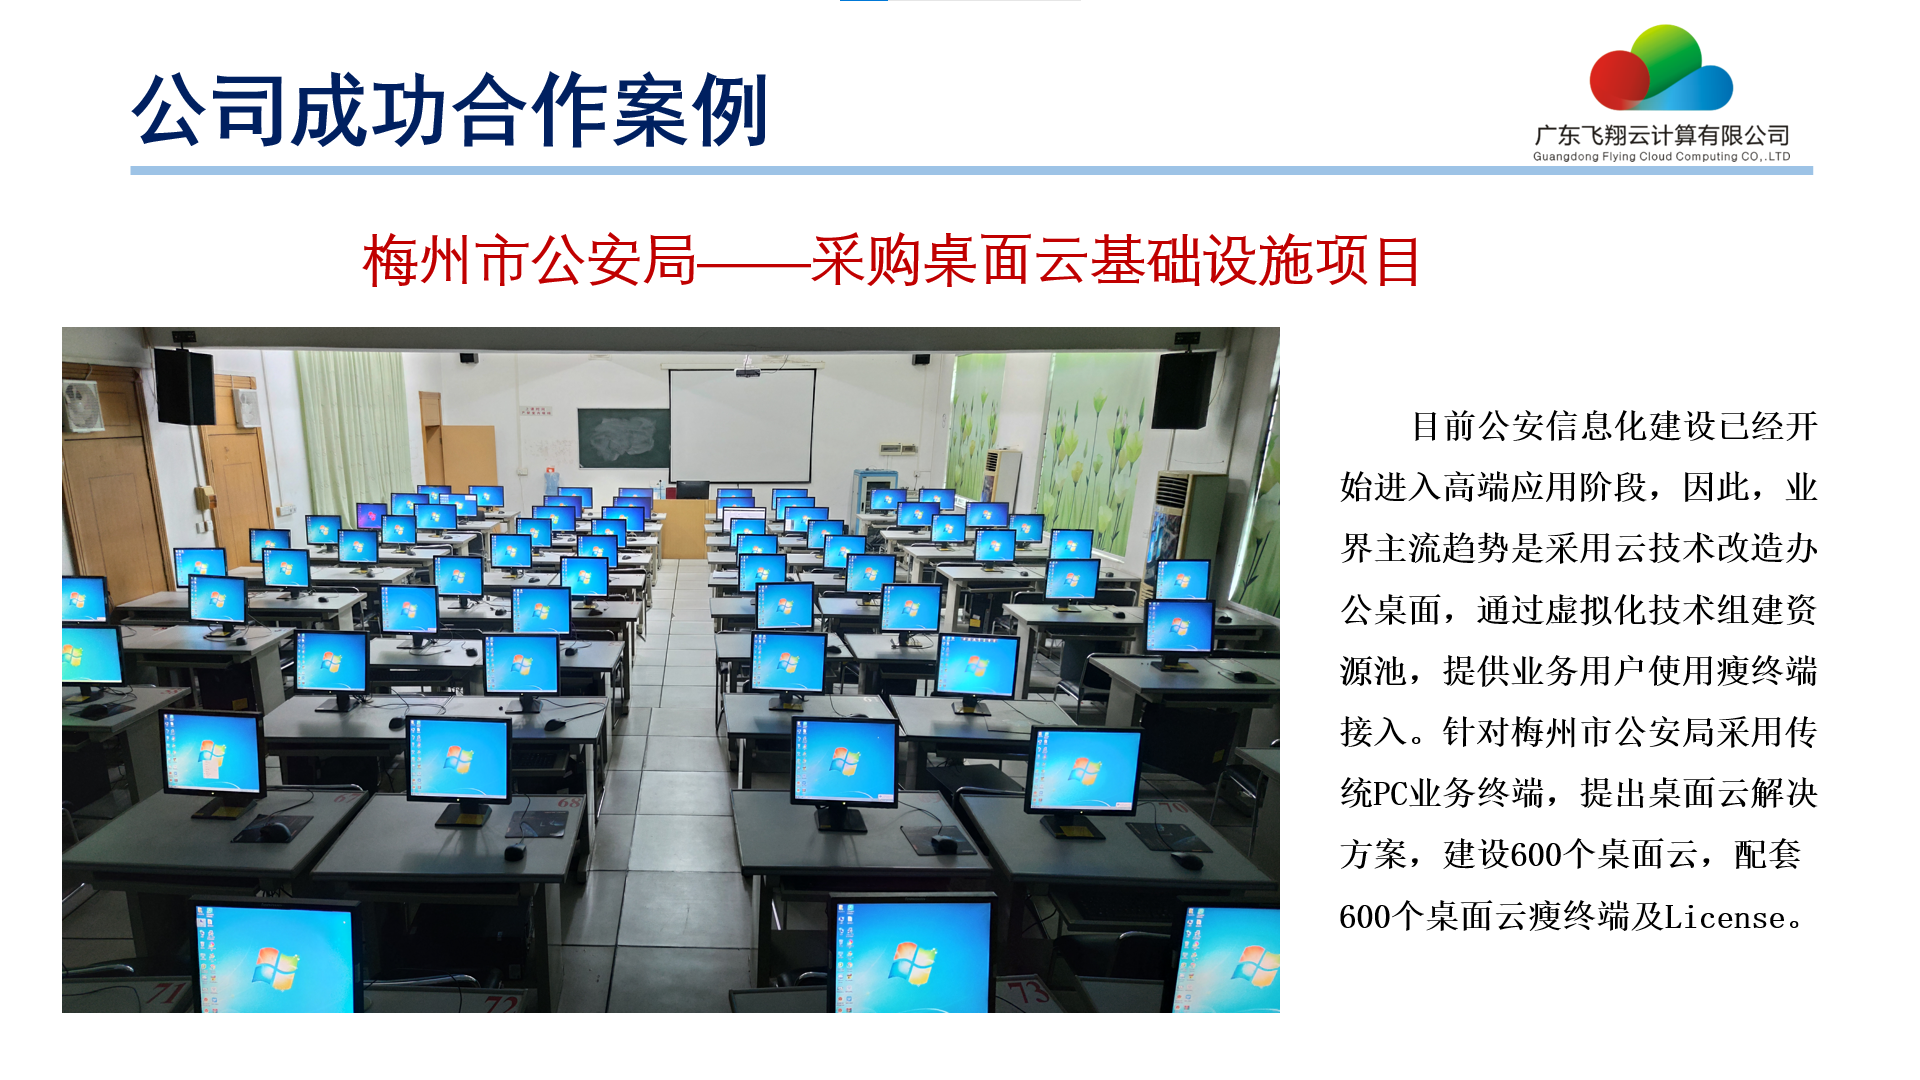 梅州市公安局——采购桌面云基础设施项目